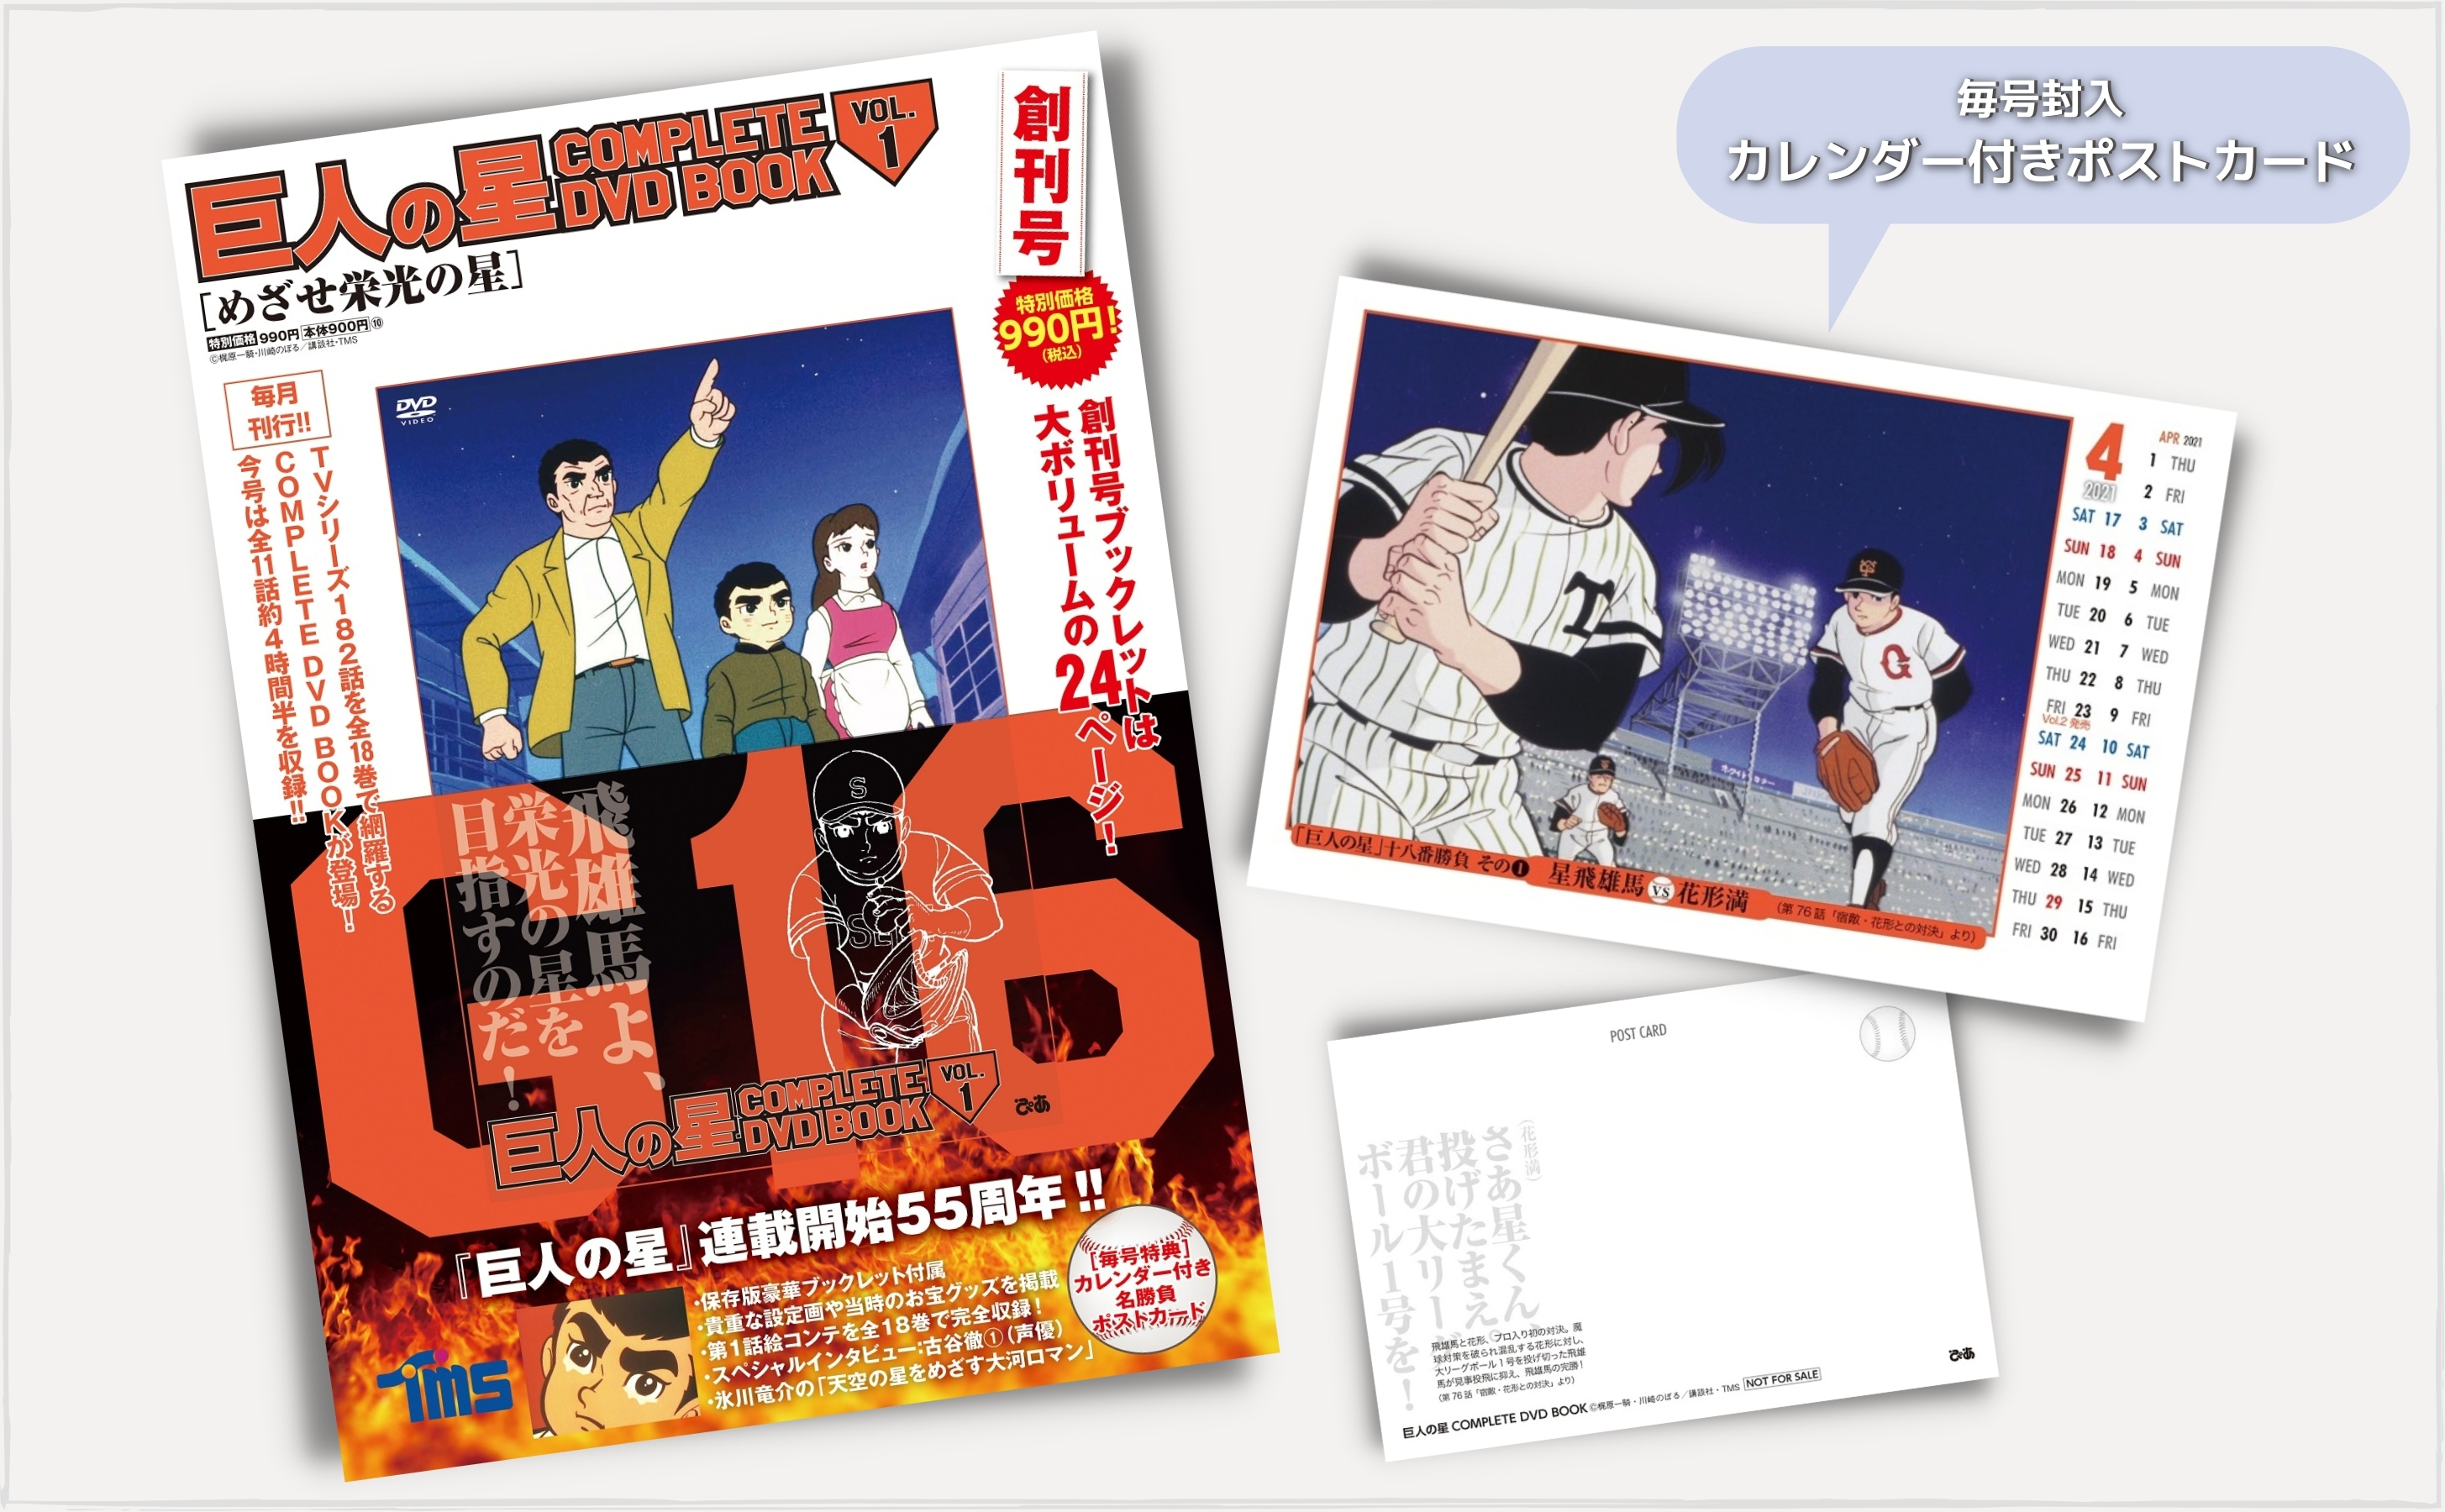 巨人の星 COMPLETE DVD BOOK vol.1 - ぴあ株式会社